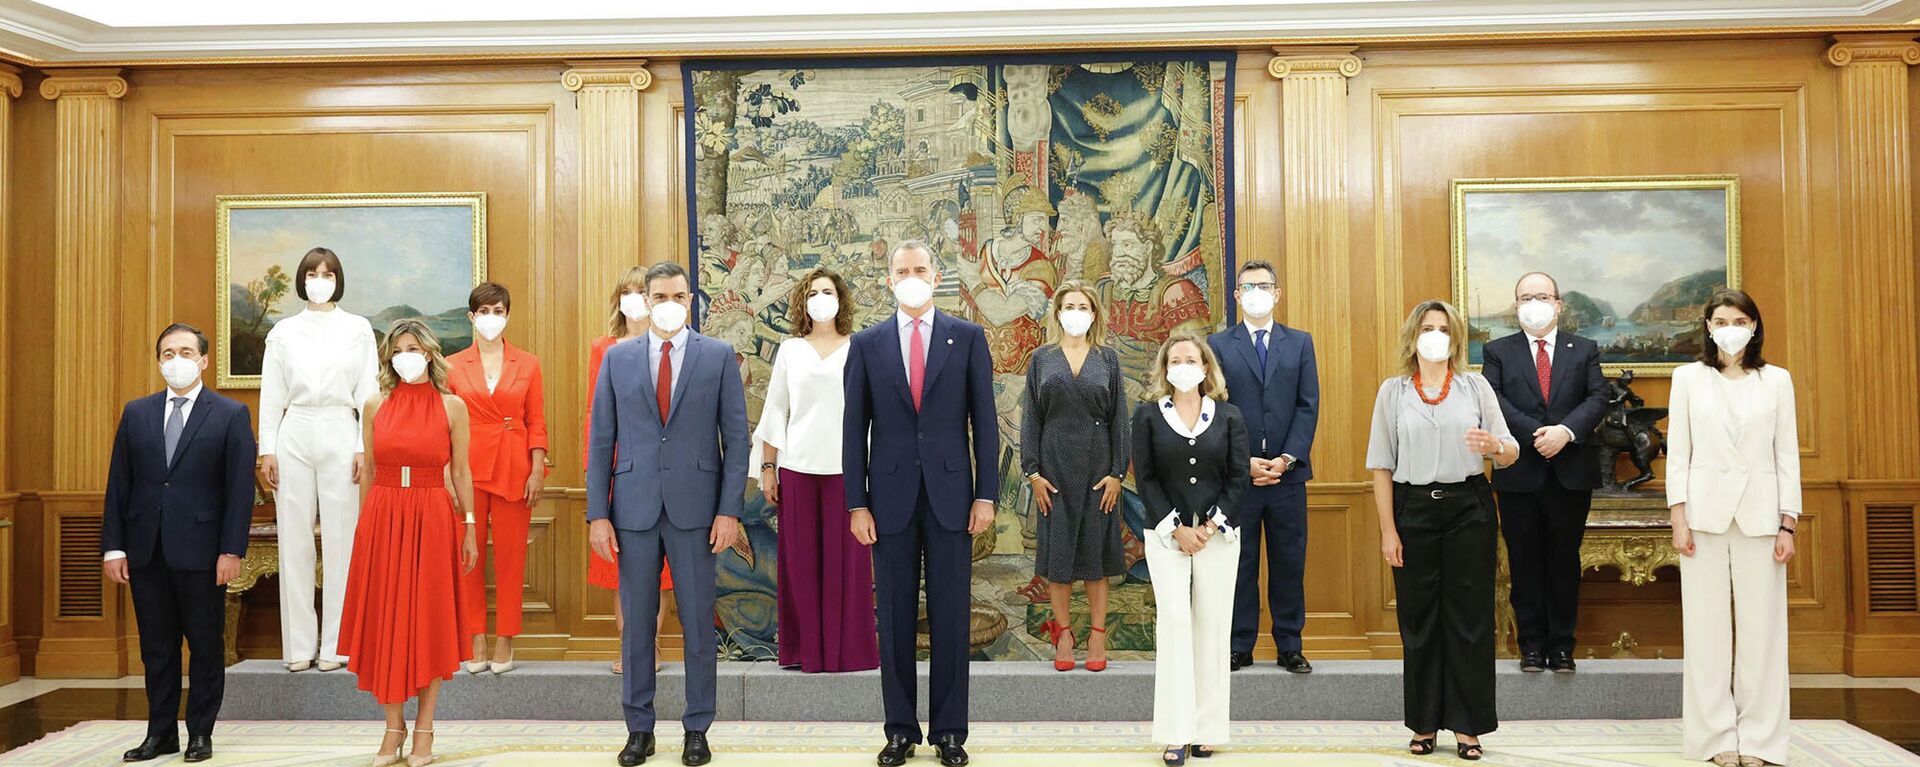 El rey Felipe VI, el presidente del Gobierno, Pedro Sánchez, las vicepresidentas, y los nuevos ministros y ministras - Sputnik Mundo, 1920, 12.07.2021